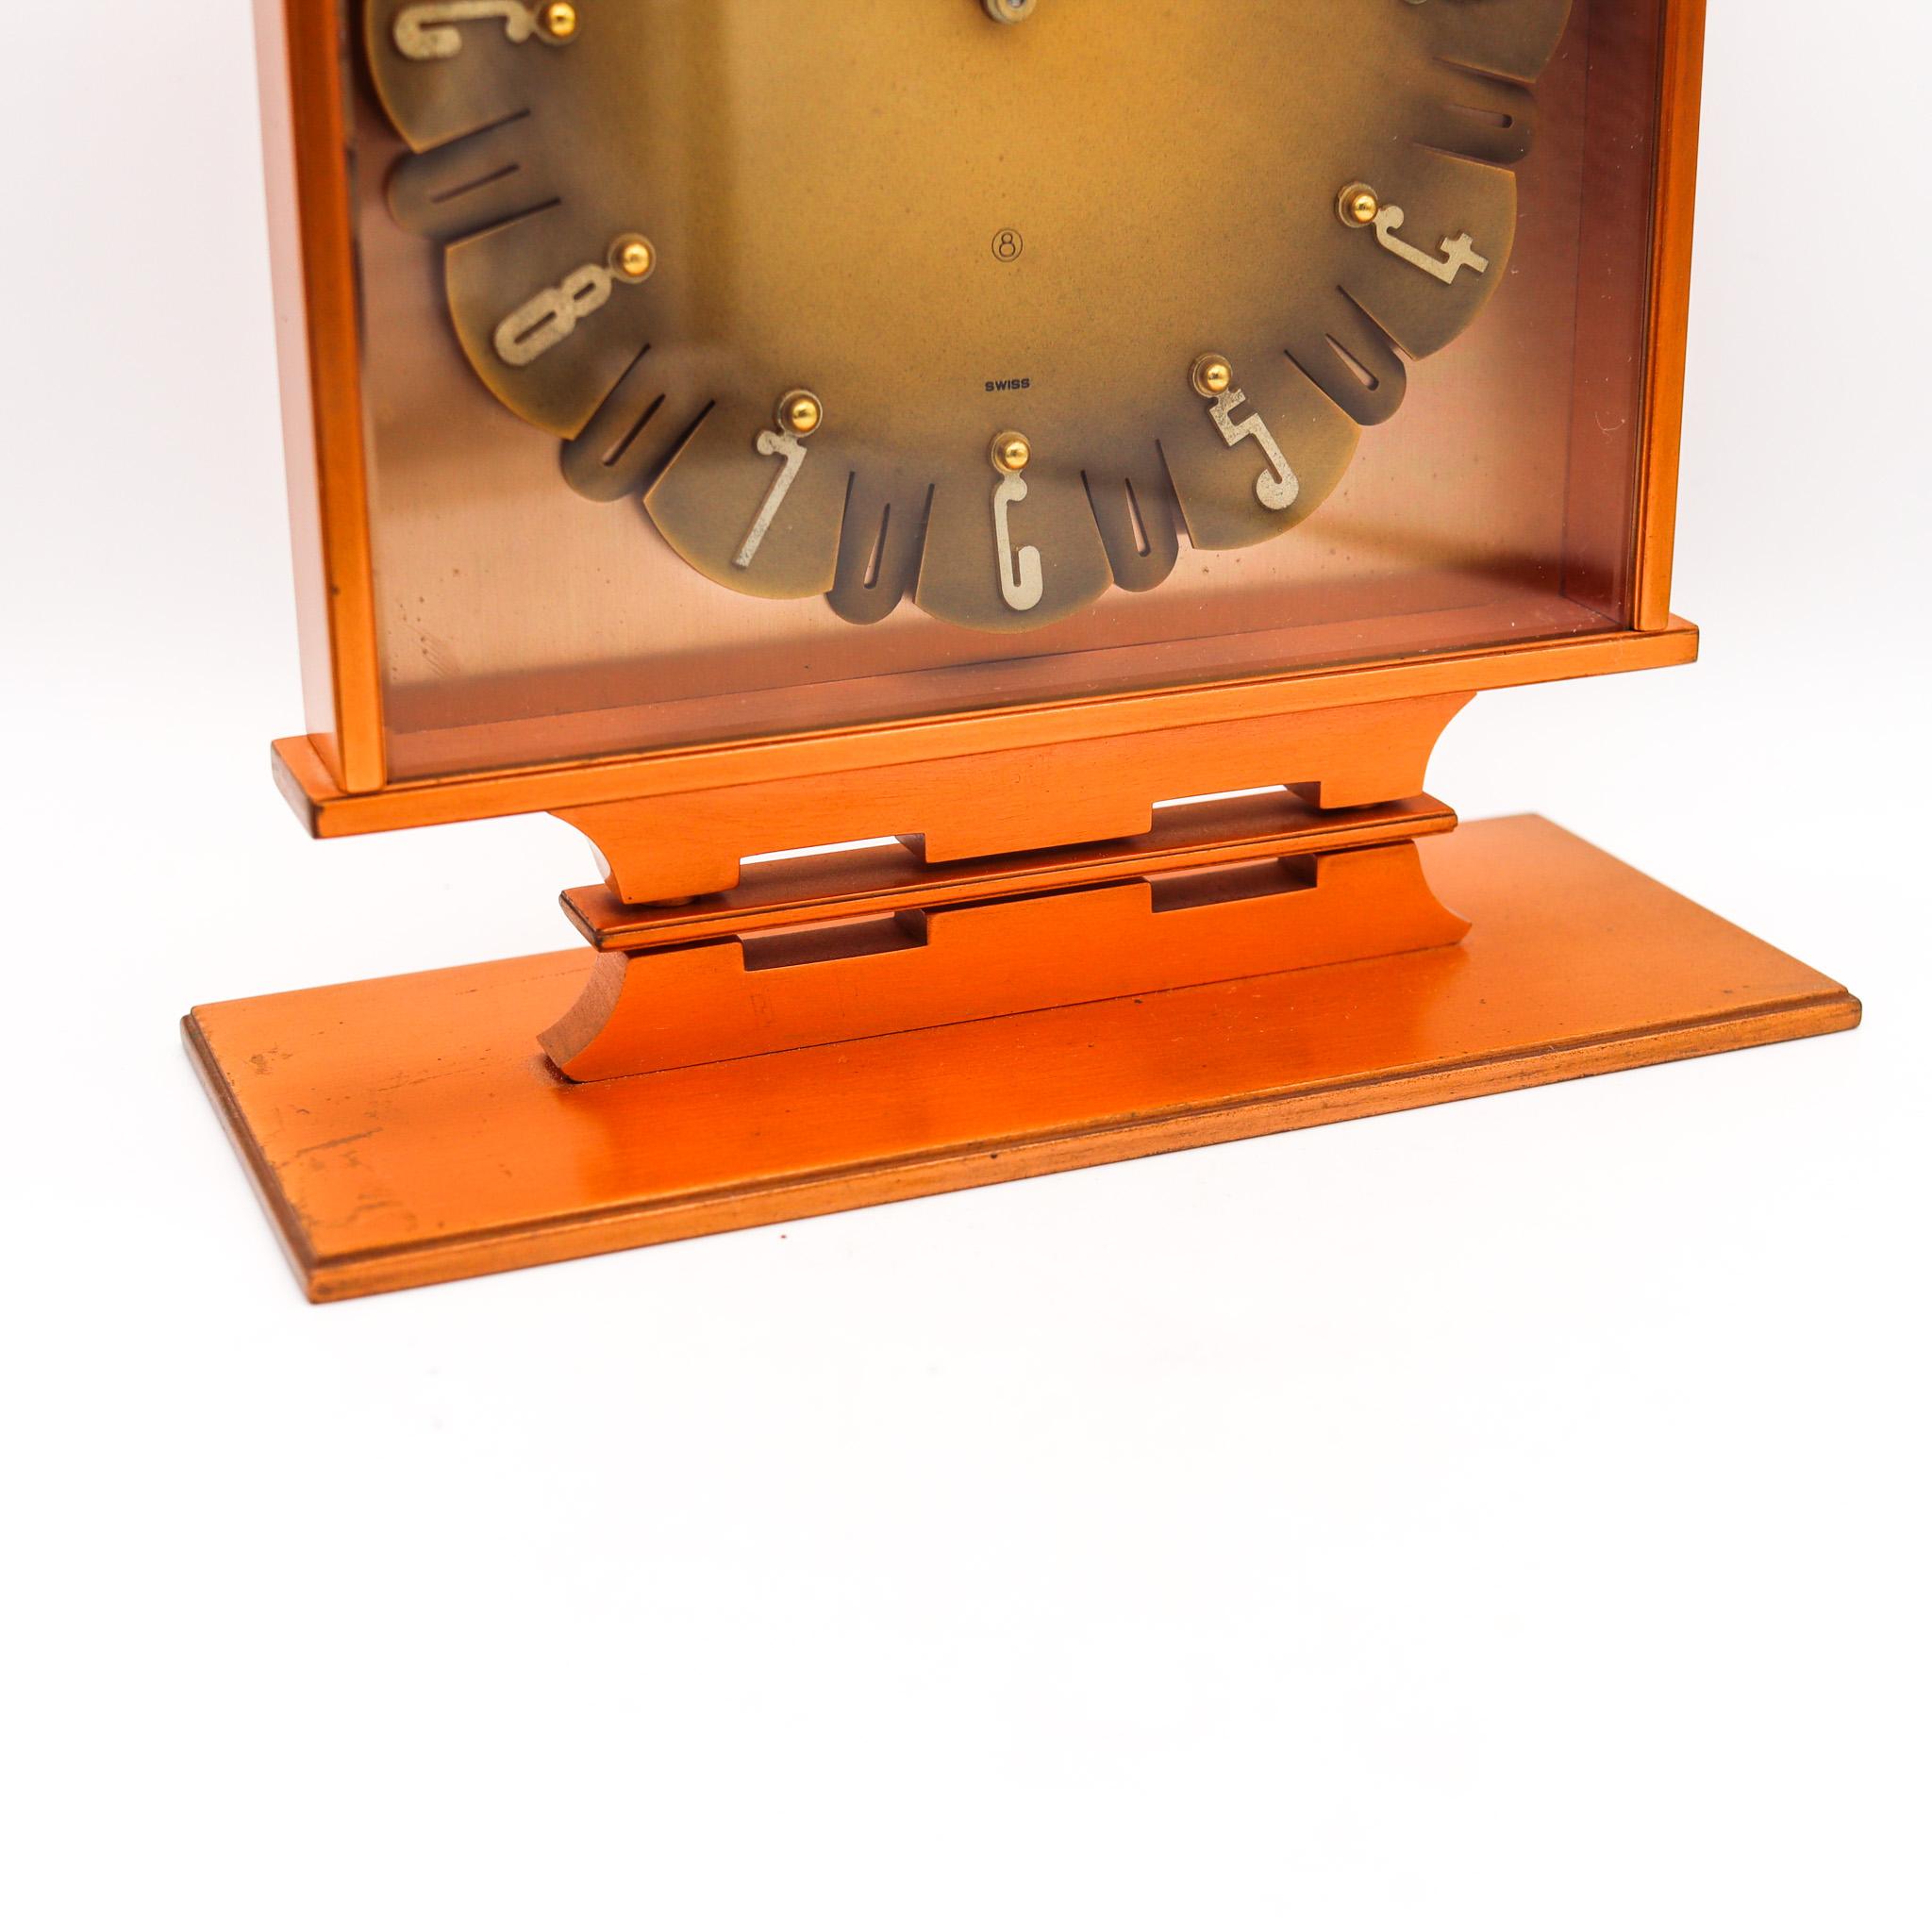 Von Jaeger-LeCoultre entworfene Tischuhr.

Fabelhafte geometrische Tischuhr, die in der Schweiz von den Uhrmachern von Jaeger-LeCoultre in den 1950er Jahren geschaffen wurde. Diese Uhr ist sehr selten und wurde mit retro-modernistischen Mustern aus